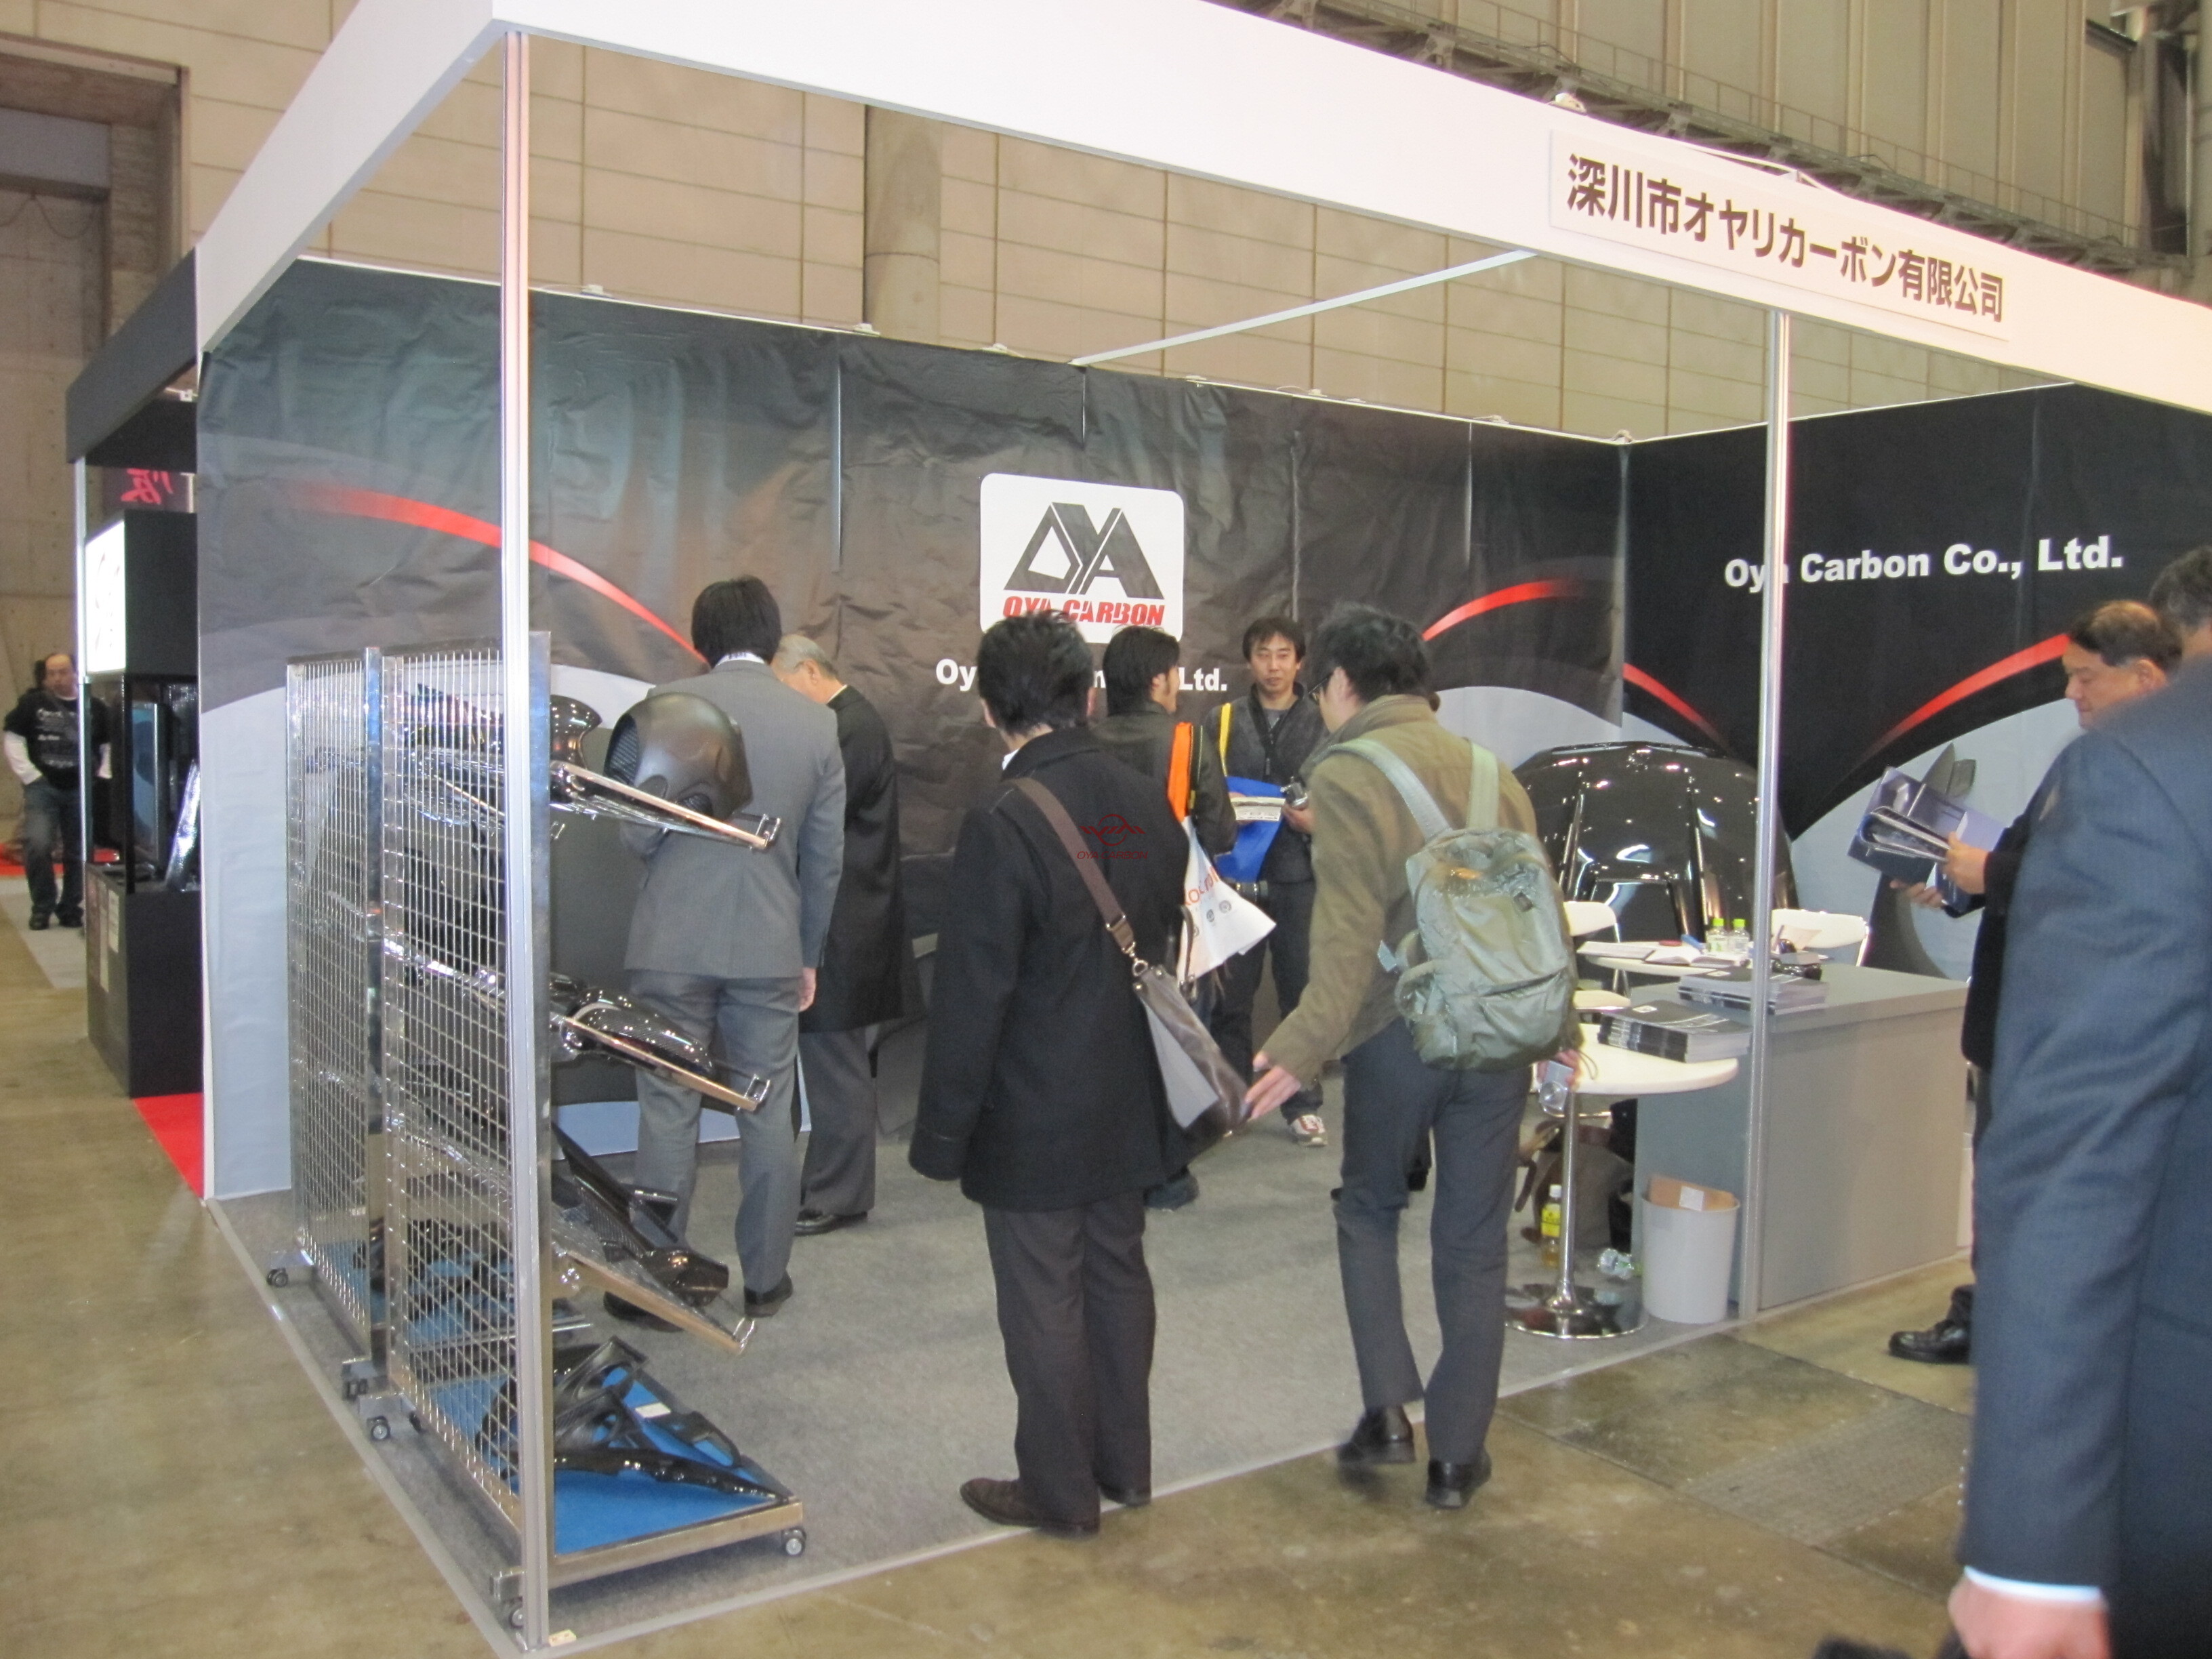 日本京改装车展東京オートサロン2011.1.14-1.16 3